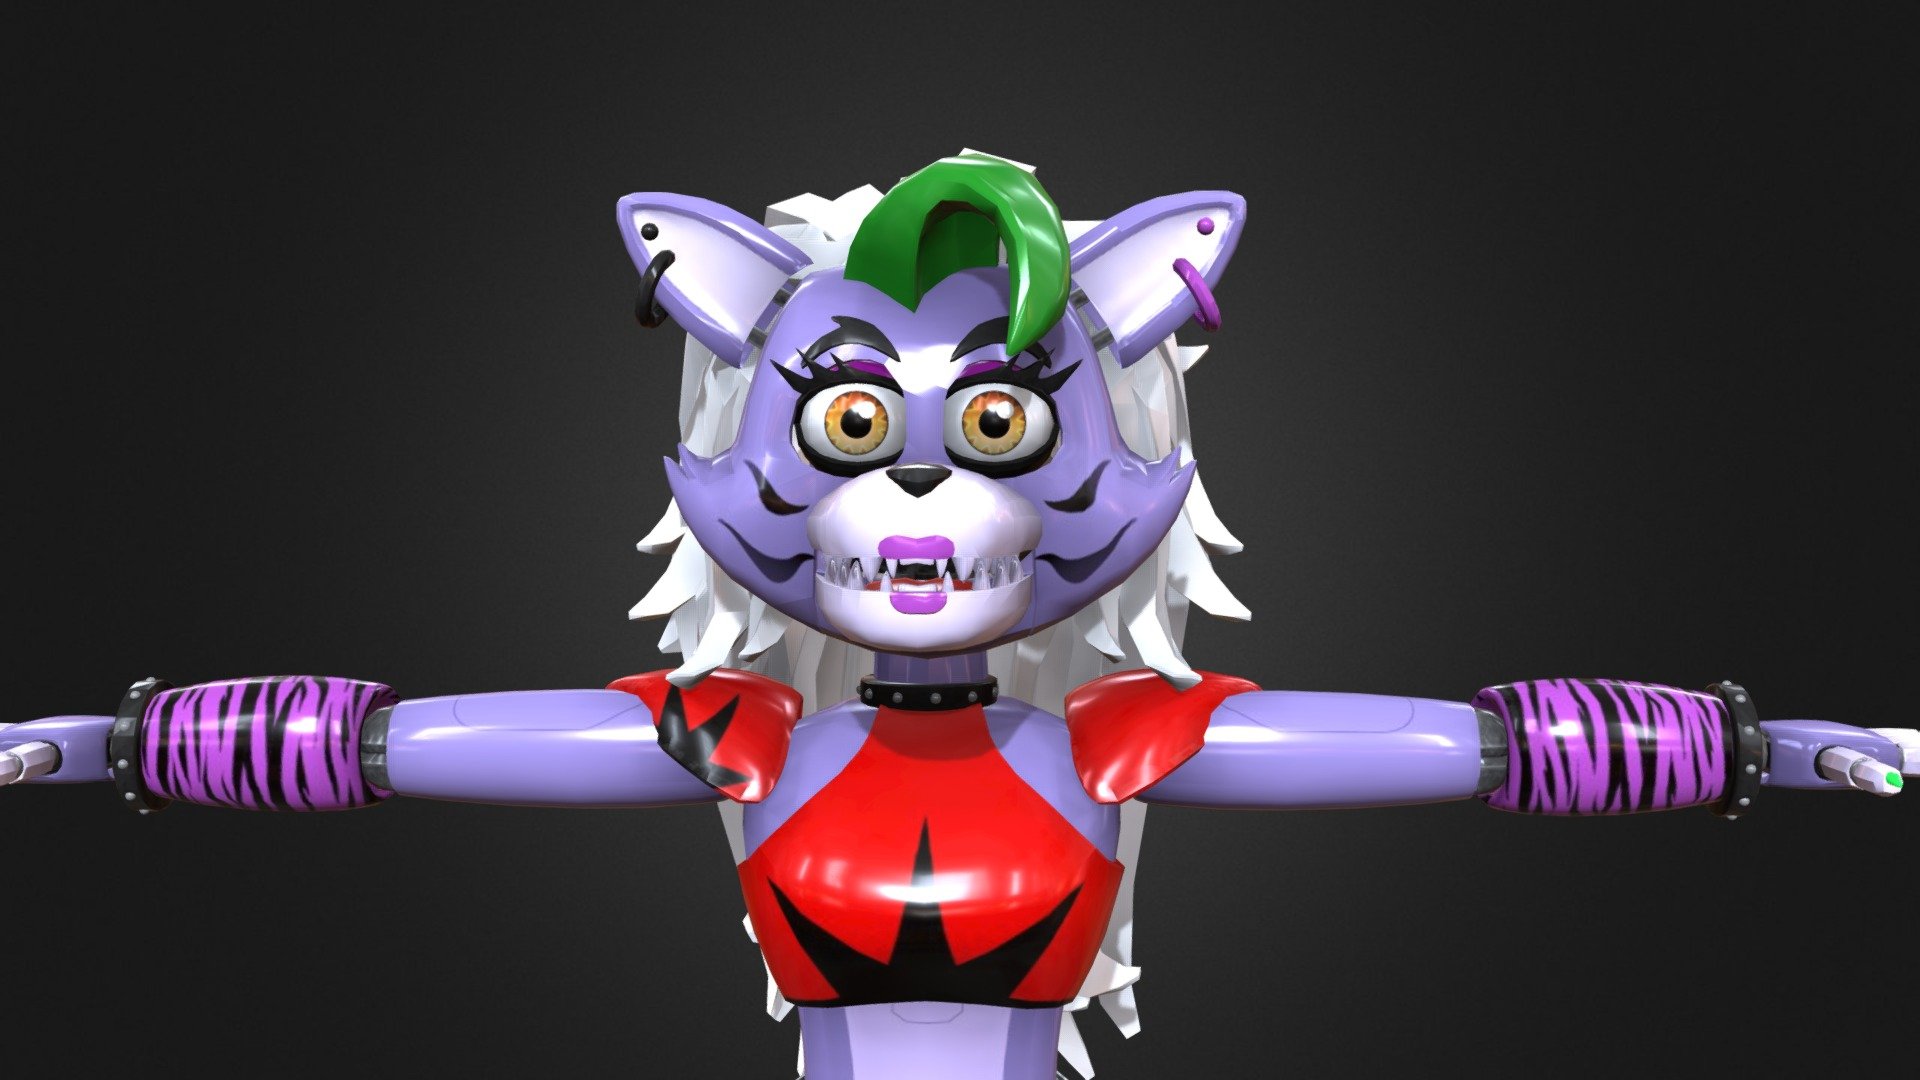 Roxanne wolf security breach - Download Free 3D model by JetteBoy  (@Jetteboy) [0f47977]